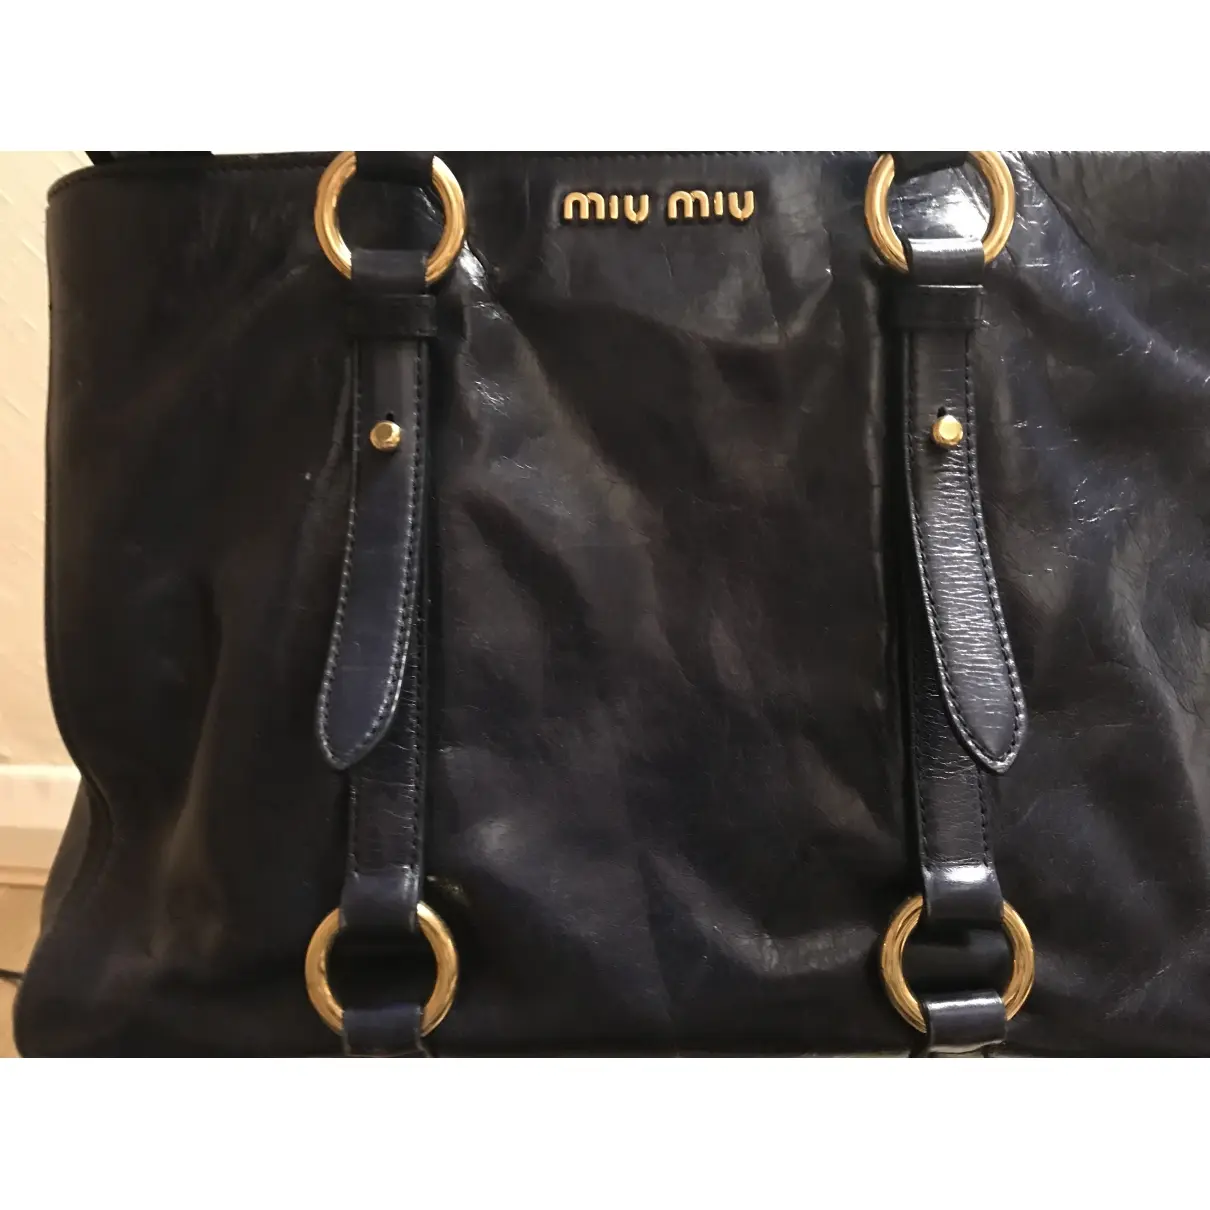 Miu Miu My Miu leather tote for sale